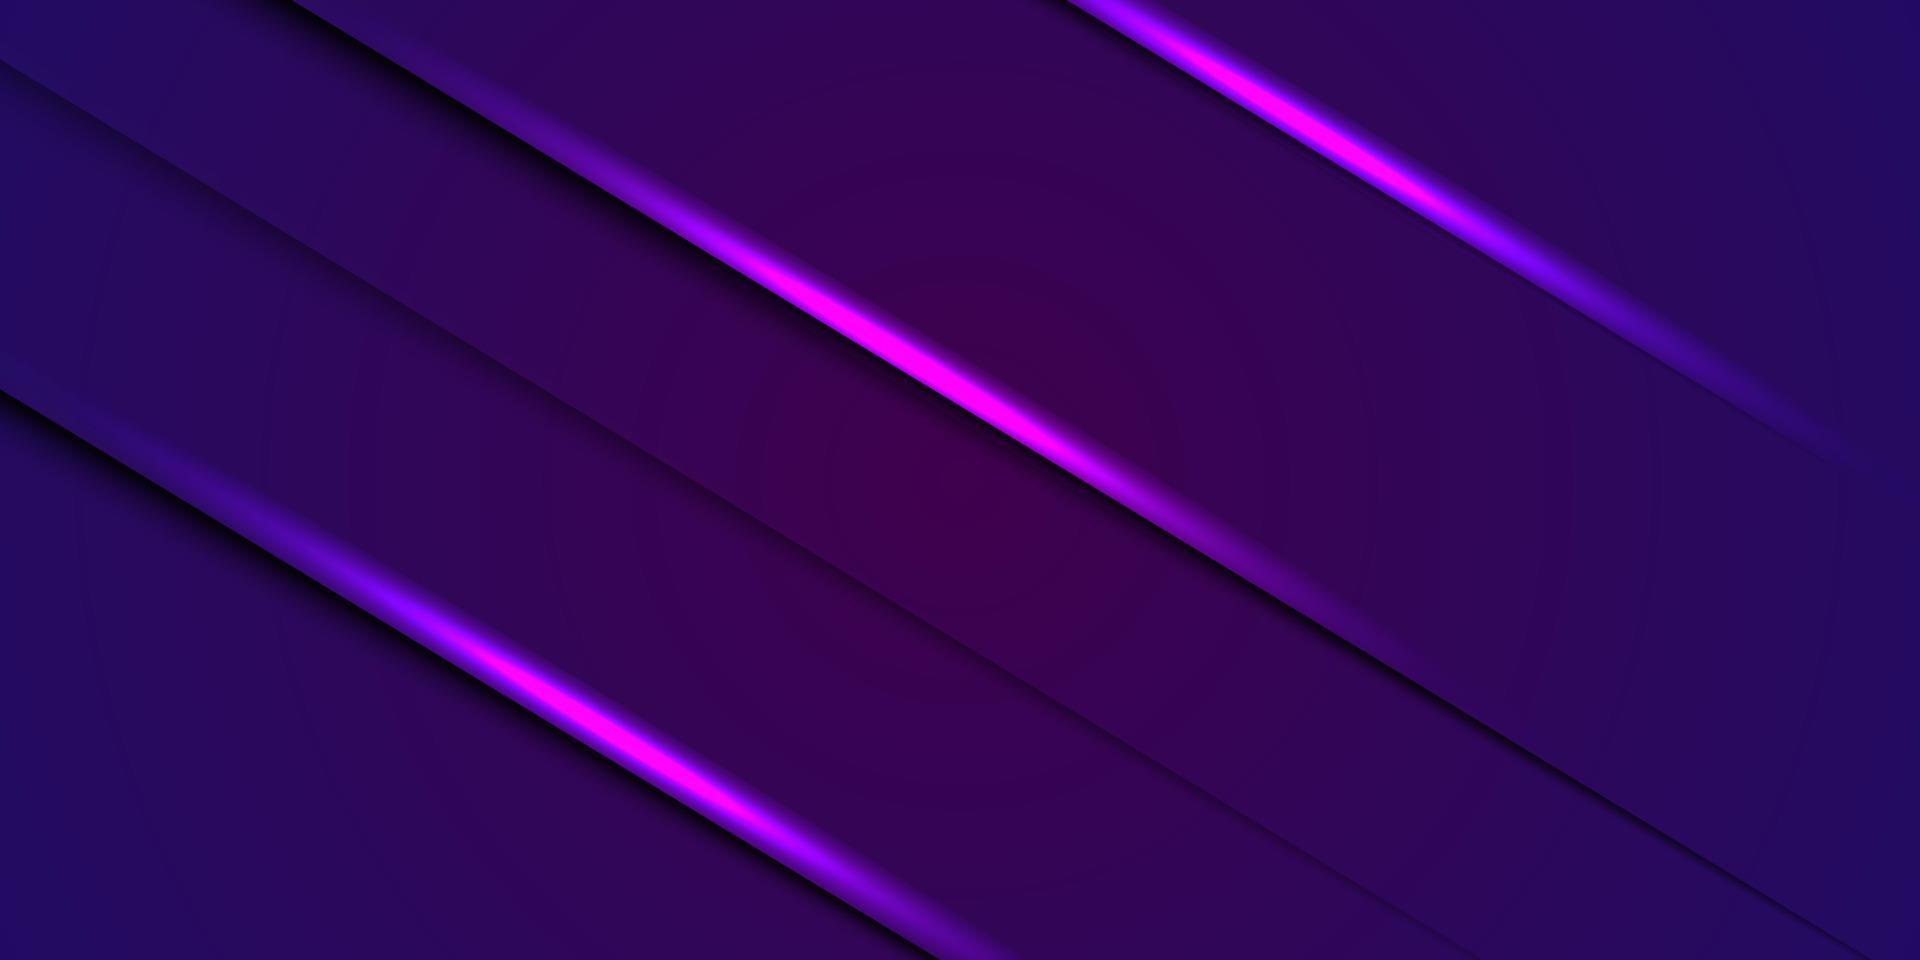 fondo púrpura oscuro abstracto con brillo. Aspecto 3d y diseño genial. ilustración vectorial eps10 vector